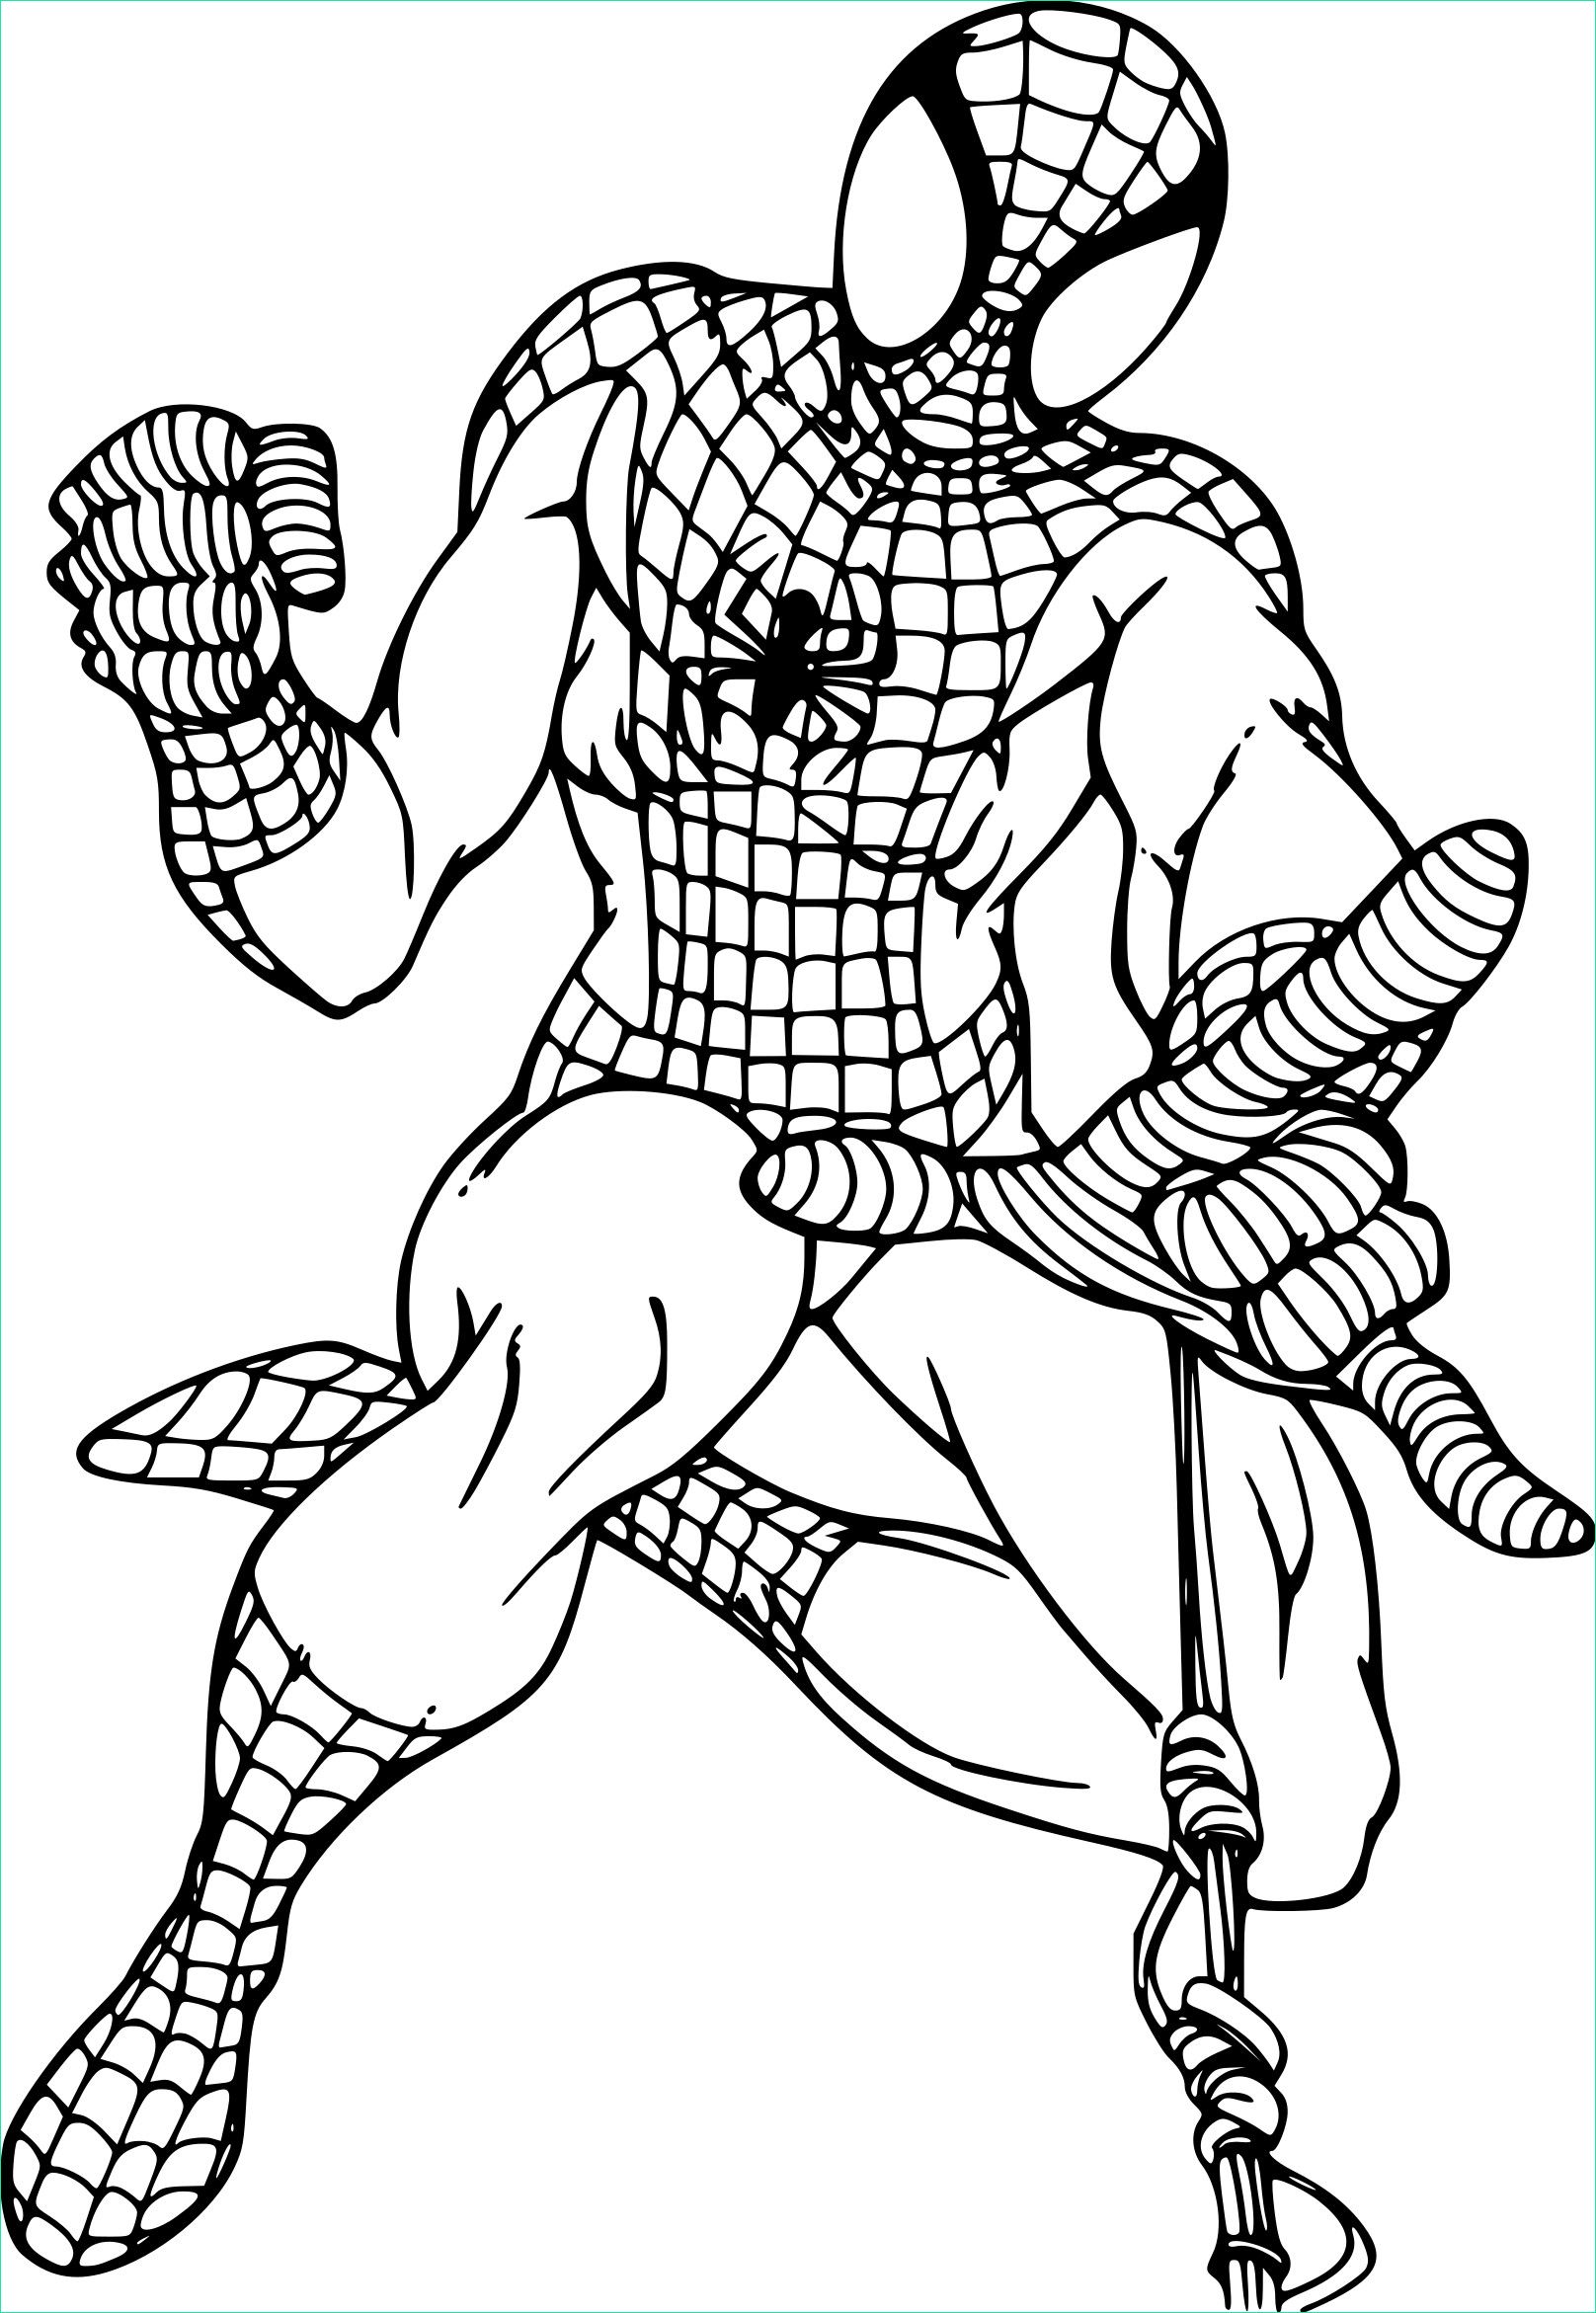 Coloriage.info Cool Galerie Coloriage Spiderman Araignée à Imprimer Sur Coloriages Fo